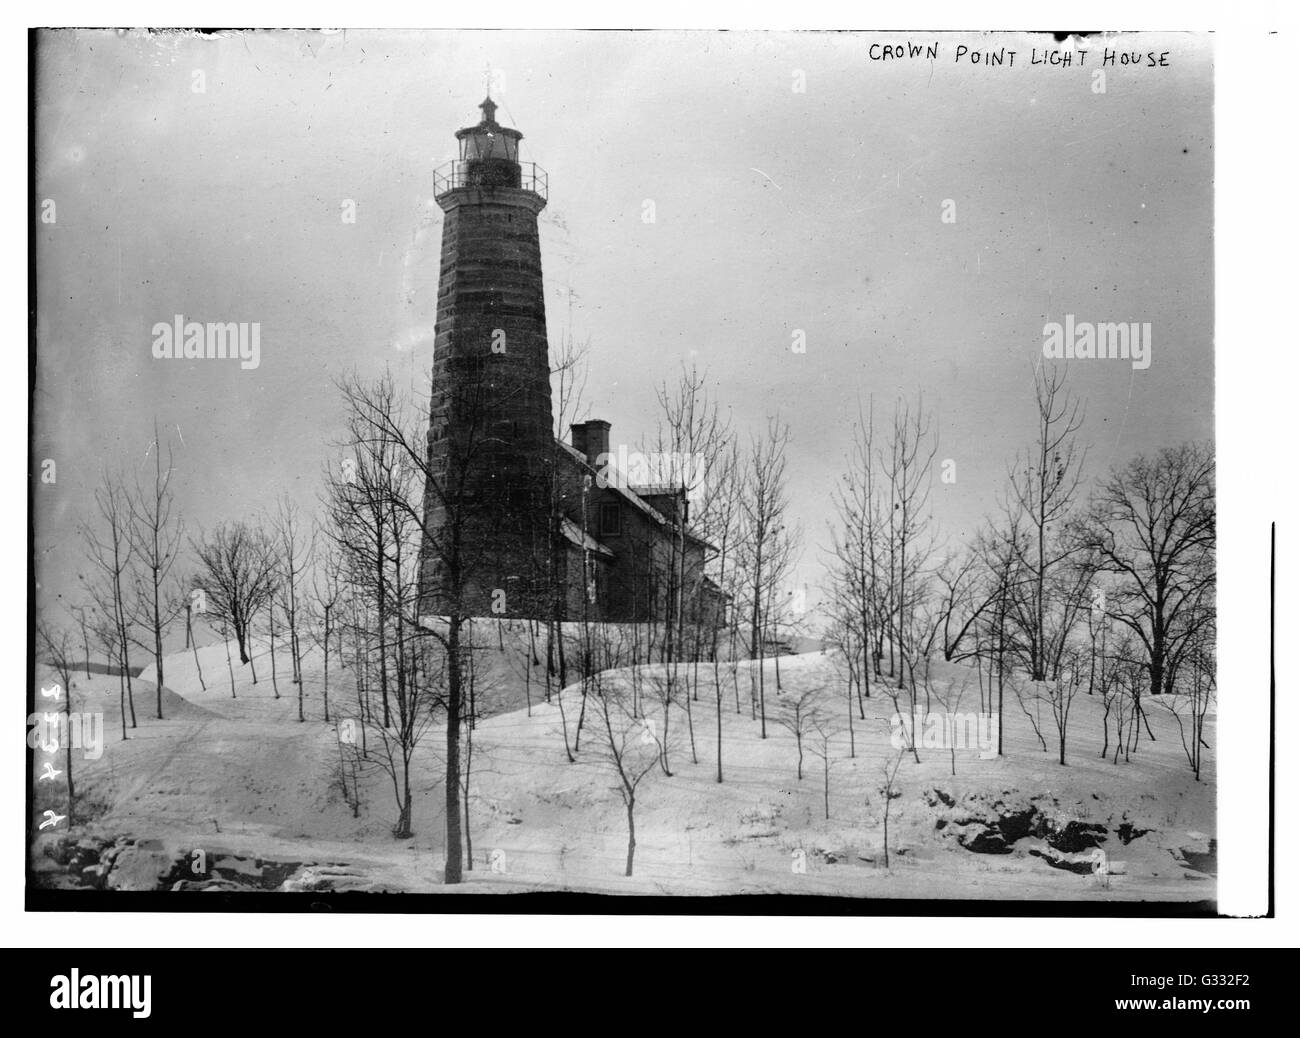 Crown Point Light, am Lake Champlain, in Crown Point, New York, wurde zuerst im Jahre 1858 beleuchtet und 1926 deaktiviert. Stockfoto